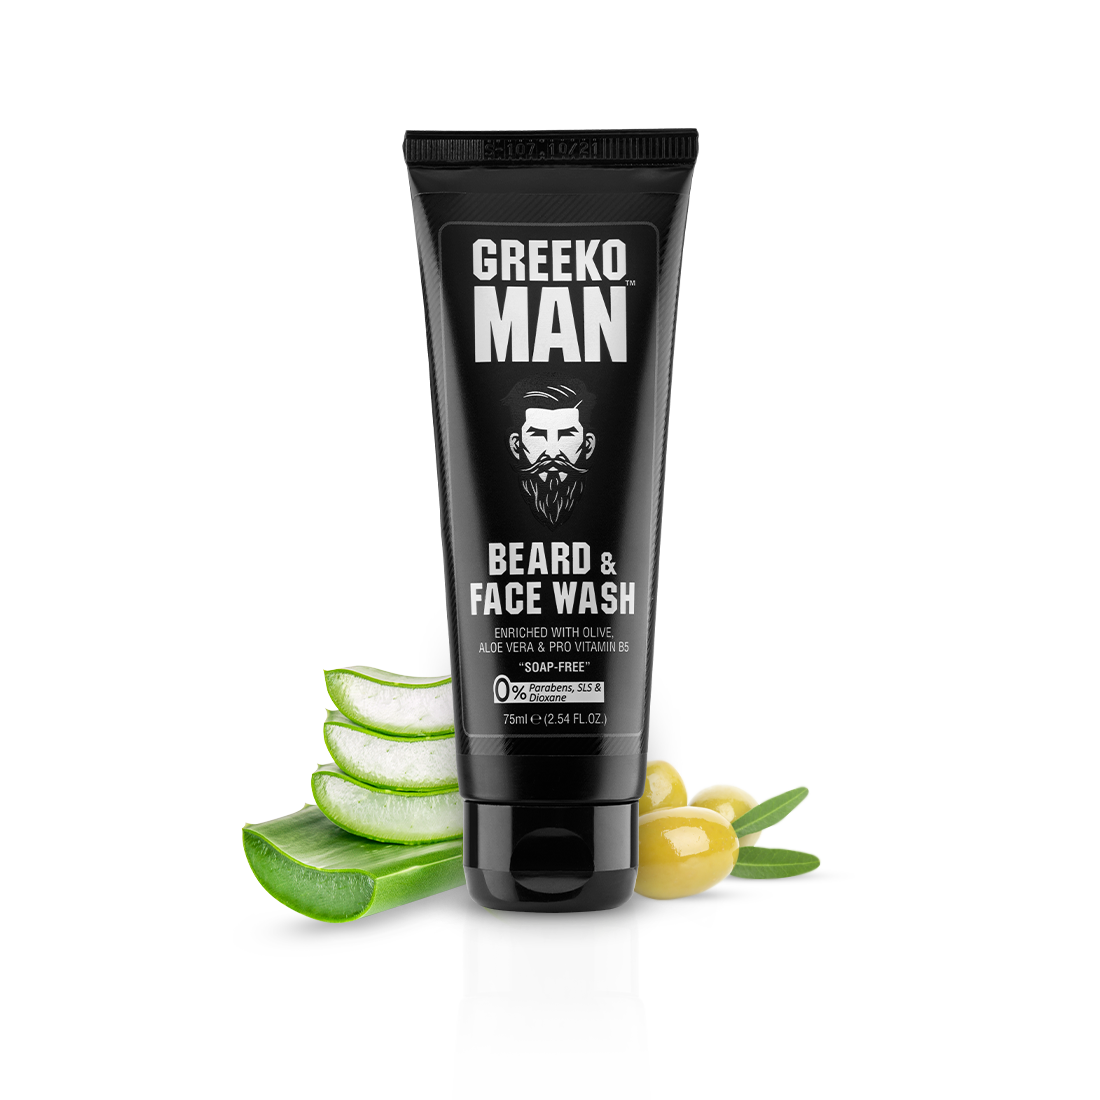 Greeko Man Beard and Face wash